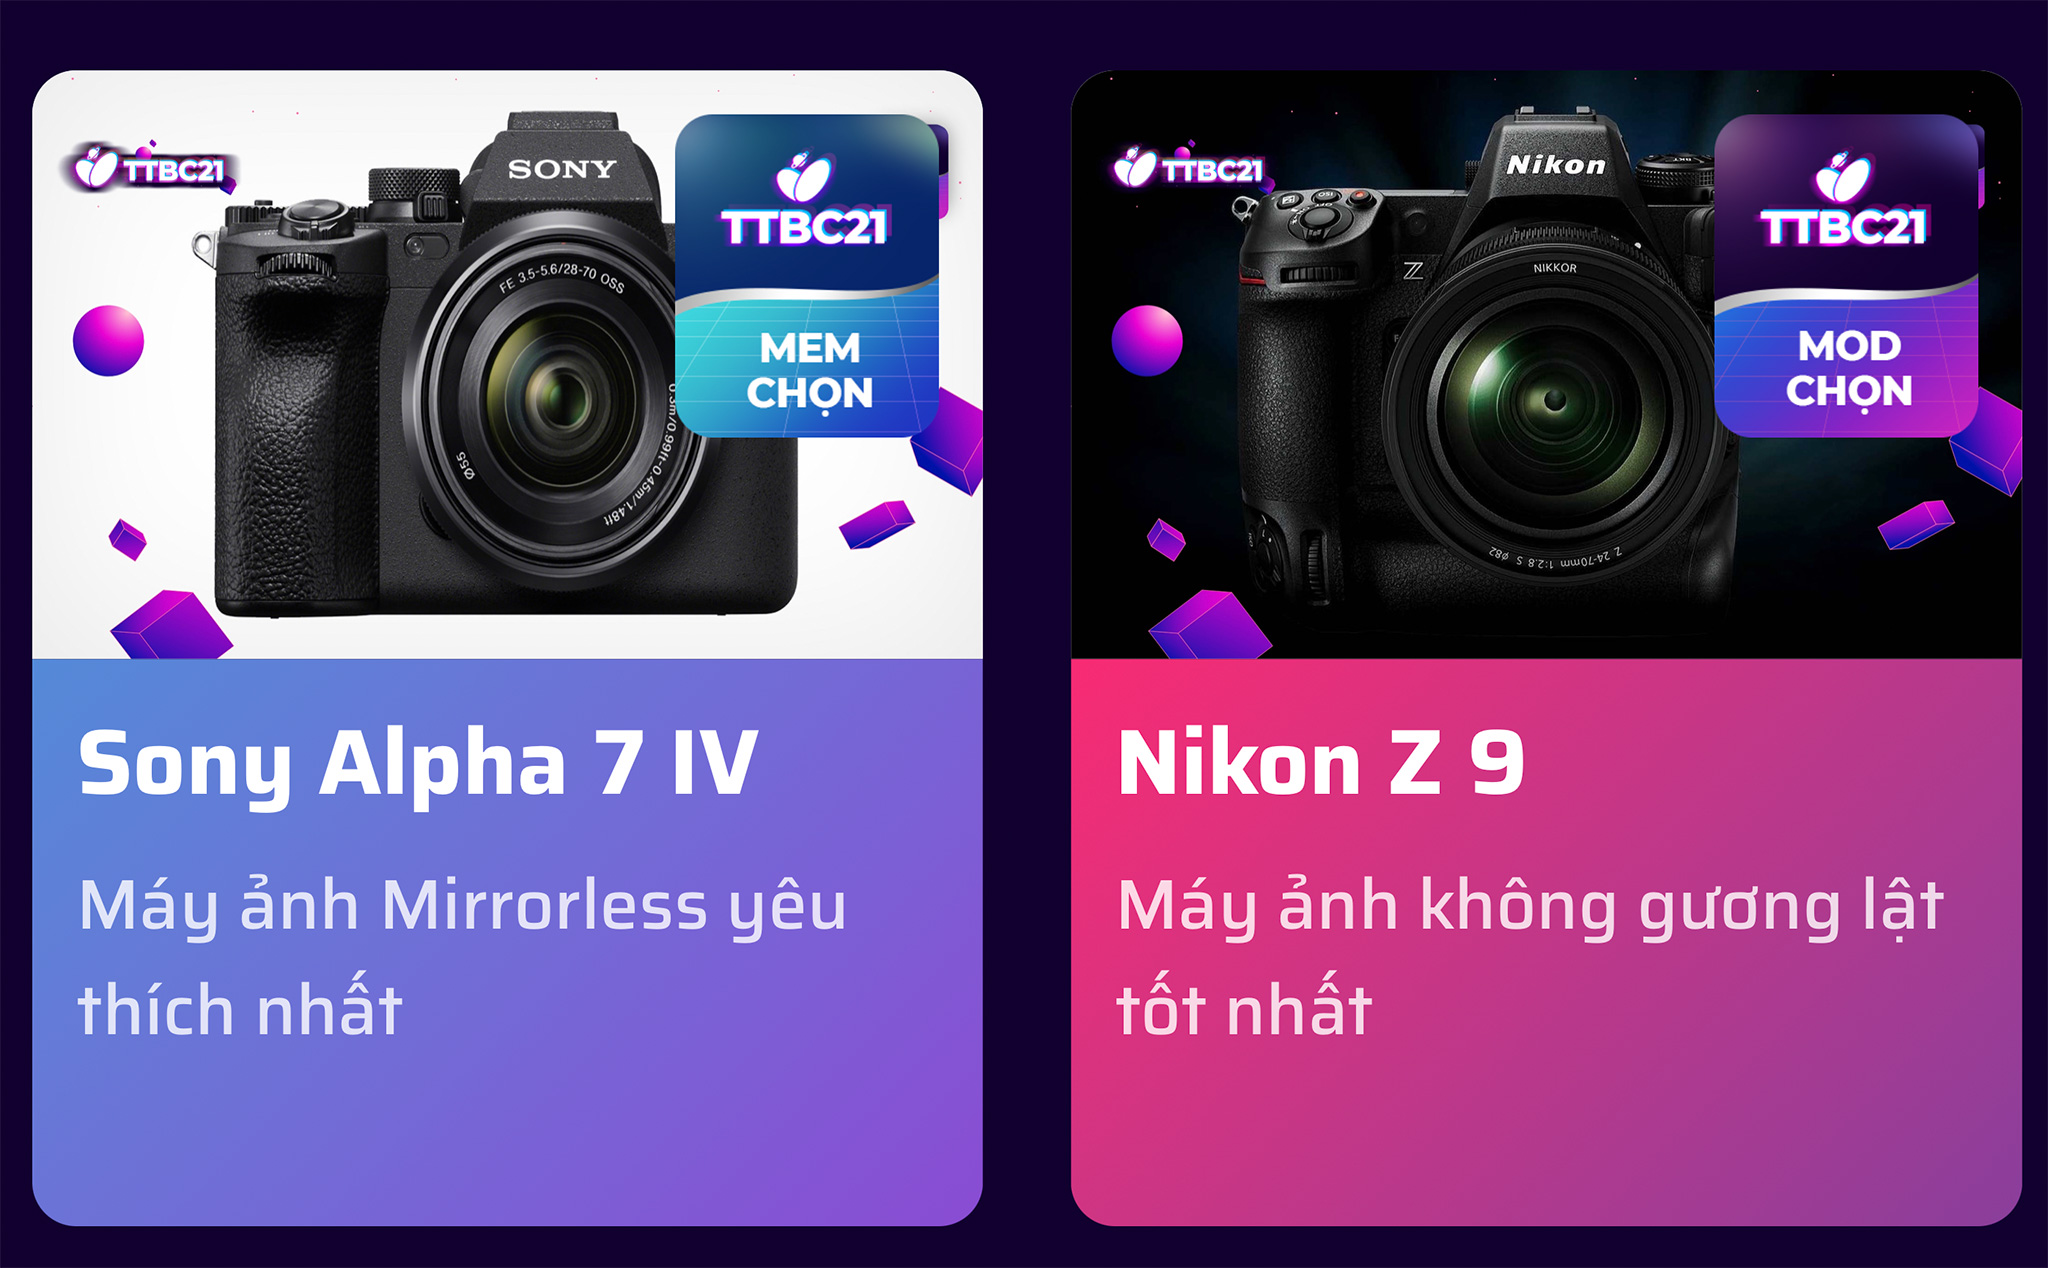 TTBC21: Sony A7 IV và Nikon Z9 được chọn